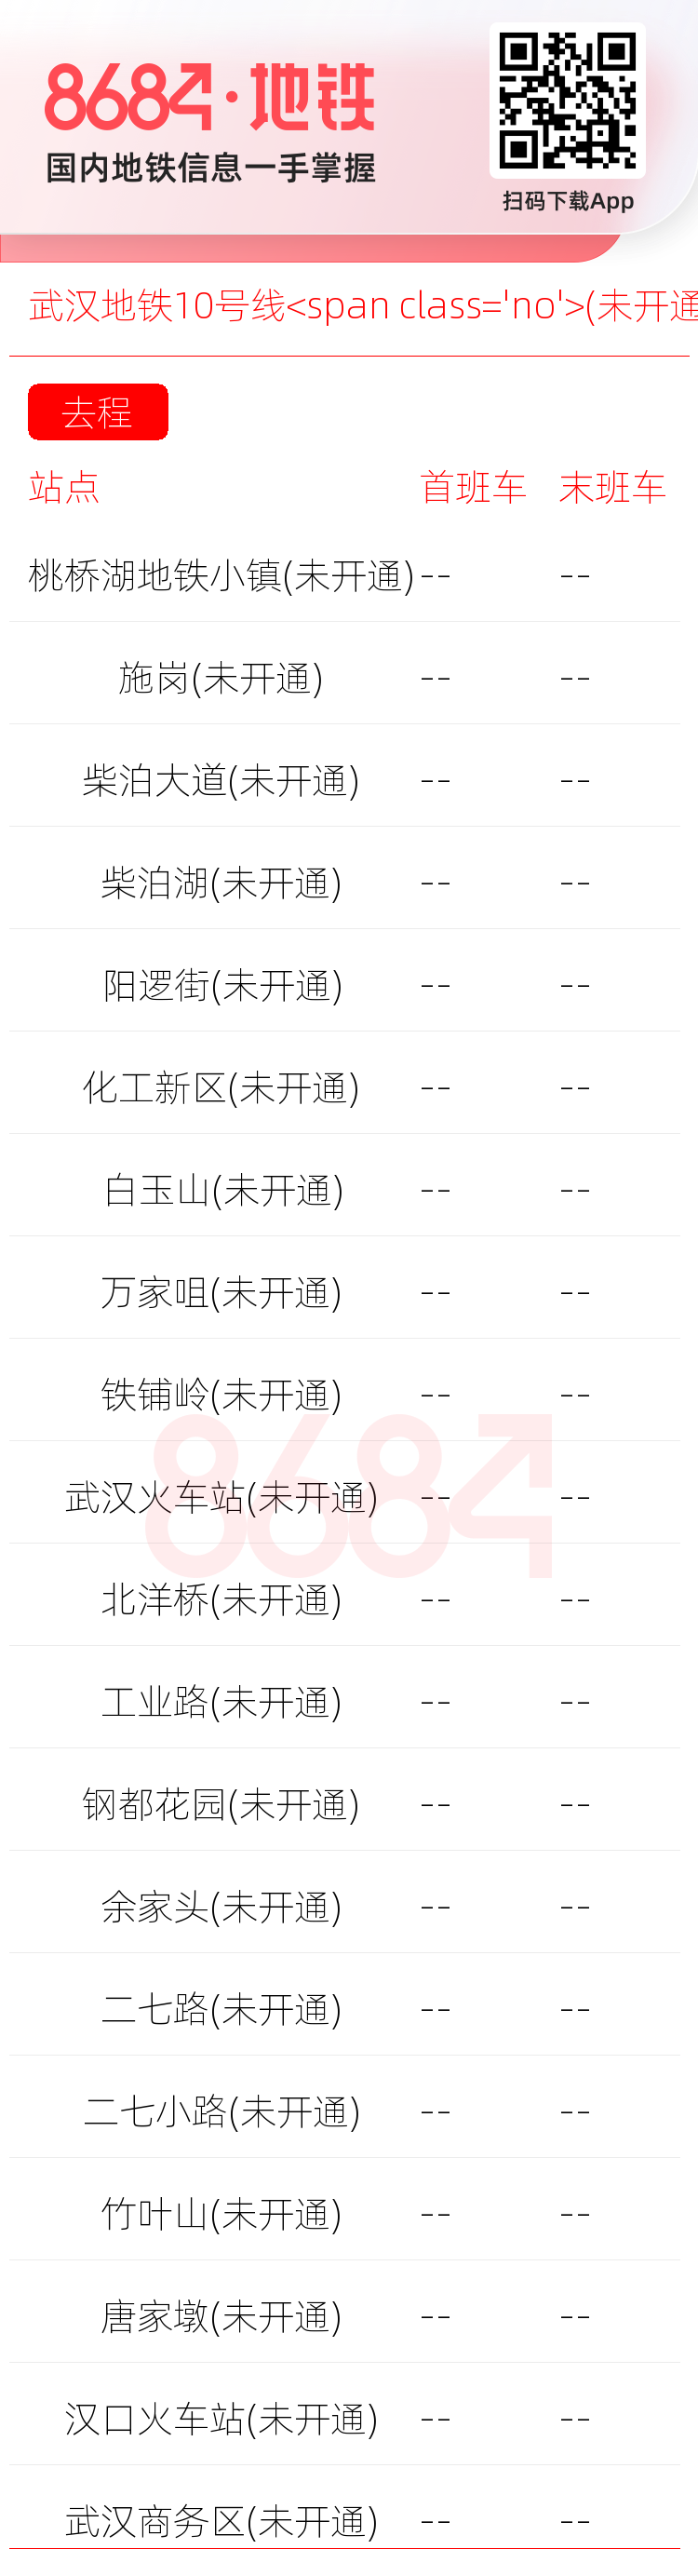 武汉地铁10号线<span class='no'>(未开通)</span>运营时间表